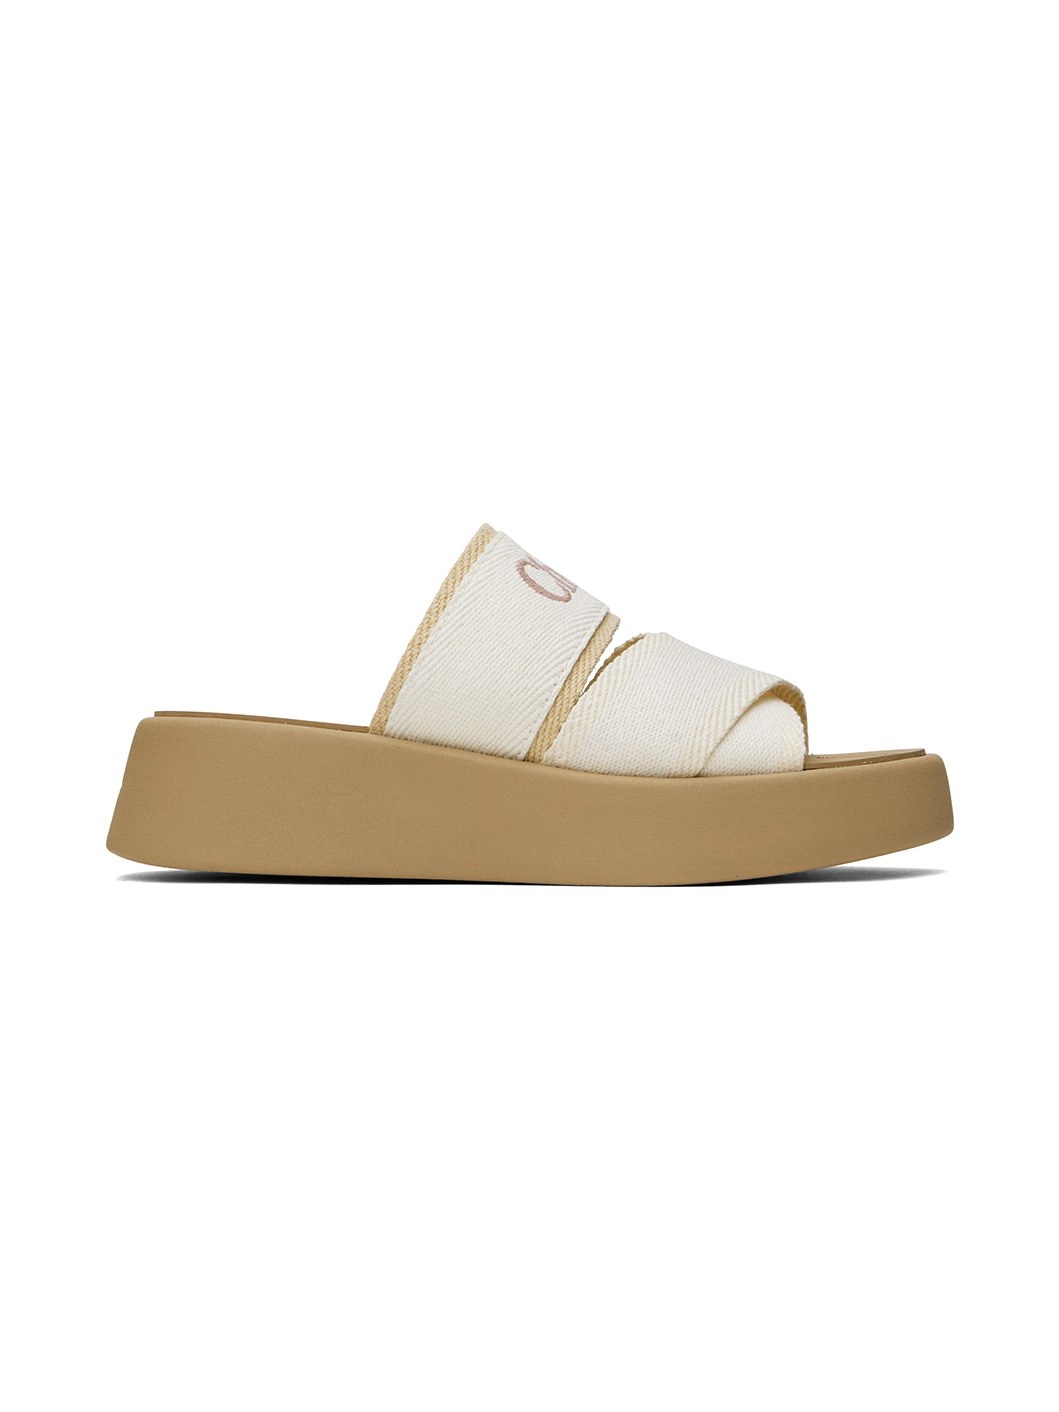 White Mila Slide Sandals - 1